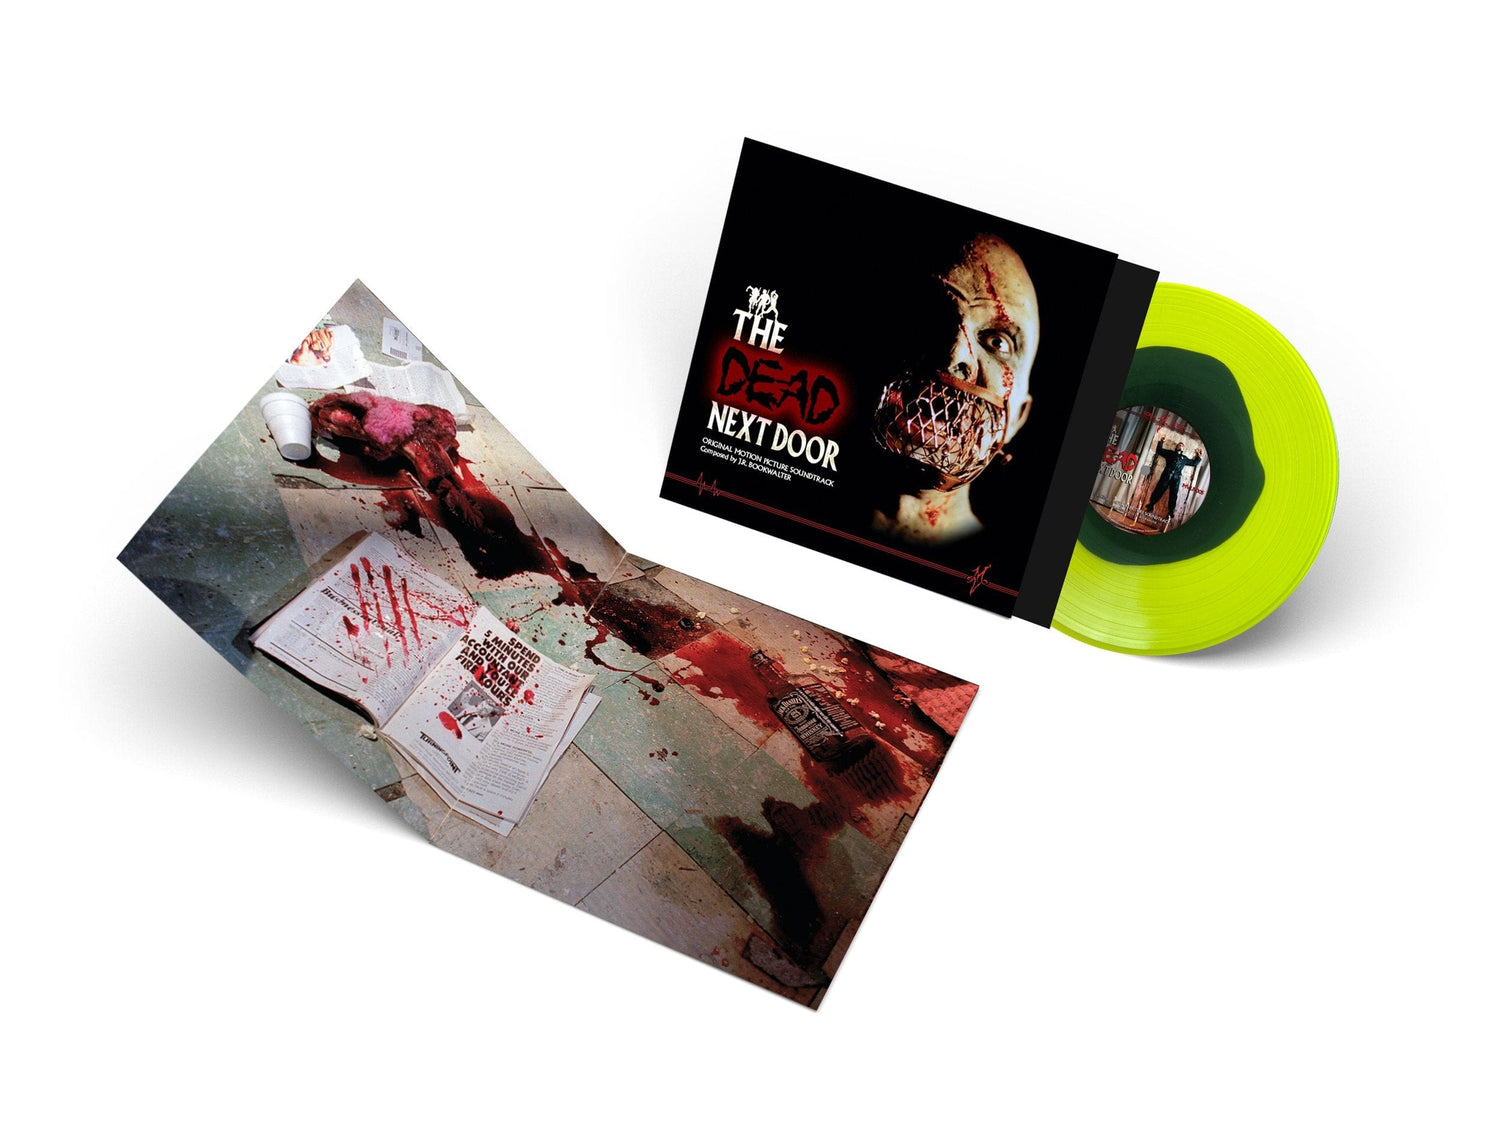 THE DEAD NEXT DOOR: Original Motion Picture Soundtrack LP (color vinyl)